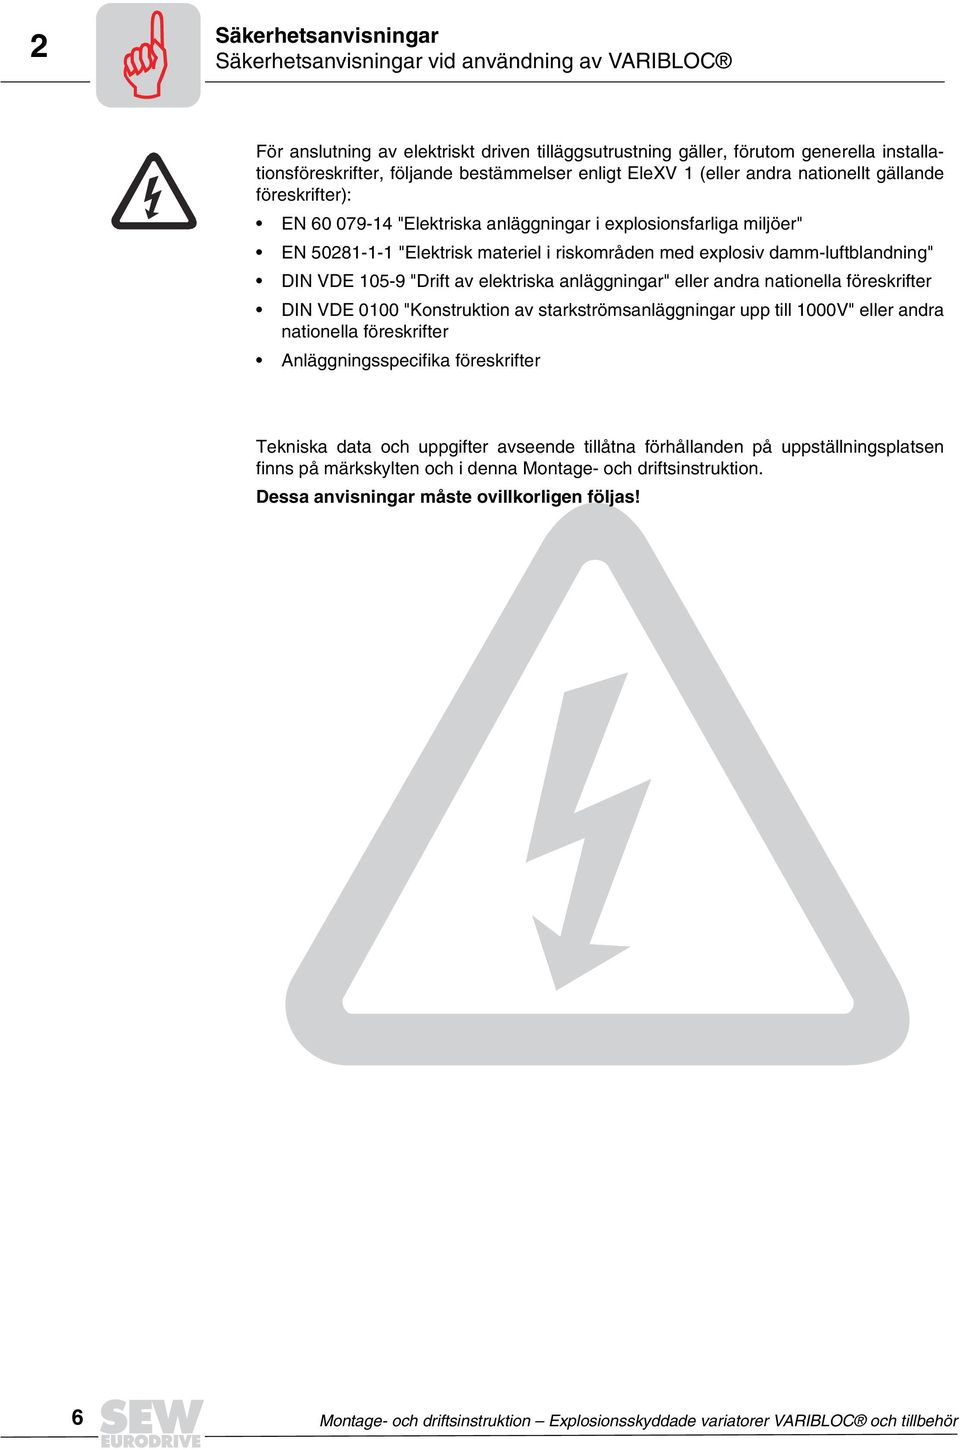 explosiv damm-luftblandning" DIN VDE 105-9 "Drift av elektriska anläggningar" eller andra nationella föreskrifter DIN VDE 0100 "Konstruktion av starkströmsanläggningar upp till 1000V" eller andra